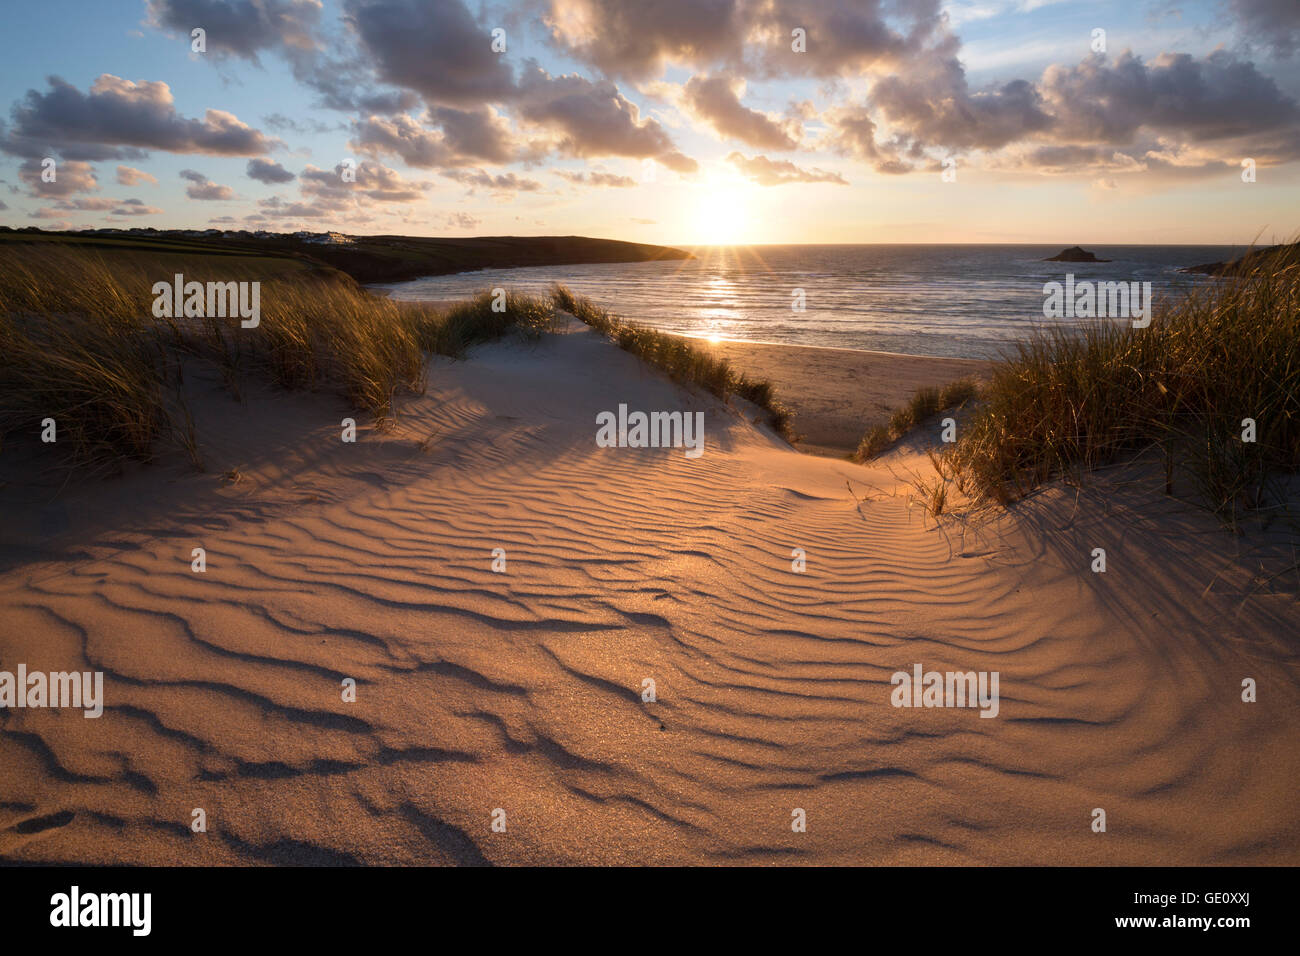 Sable striée et des dunes de sable au coucher du soleil, plage de Crantock, Crantock, près de Newquay, Cornwall, Angleterre, Royaume-Uni, Europe Banque D'Images